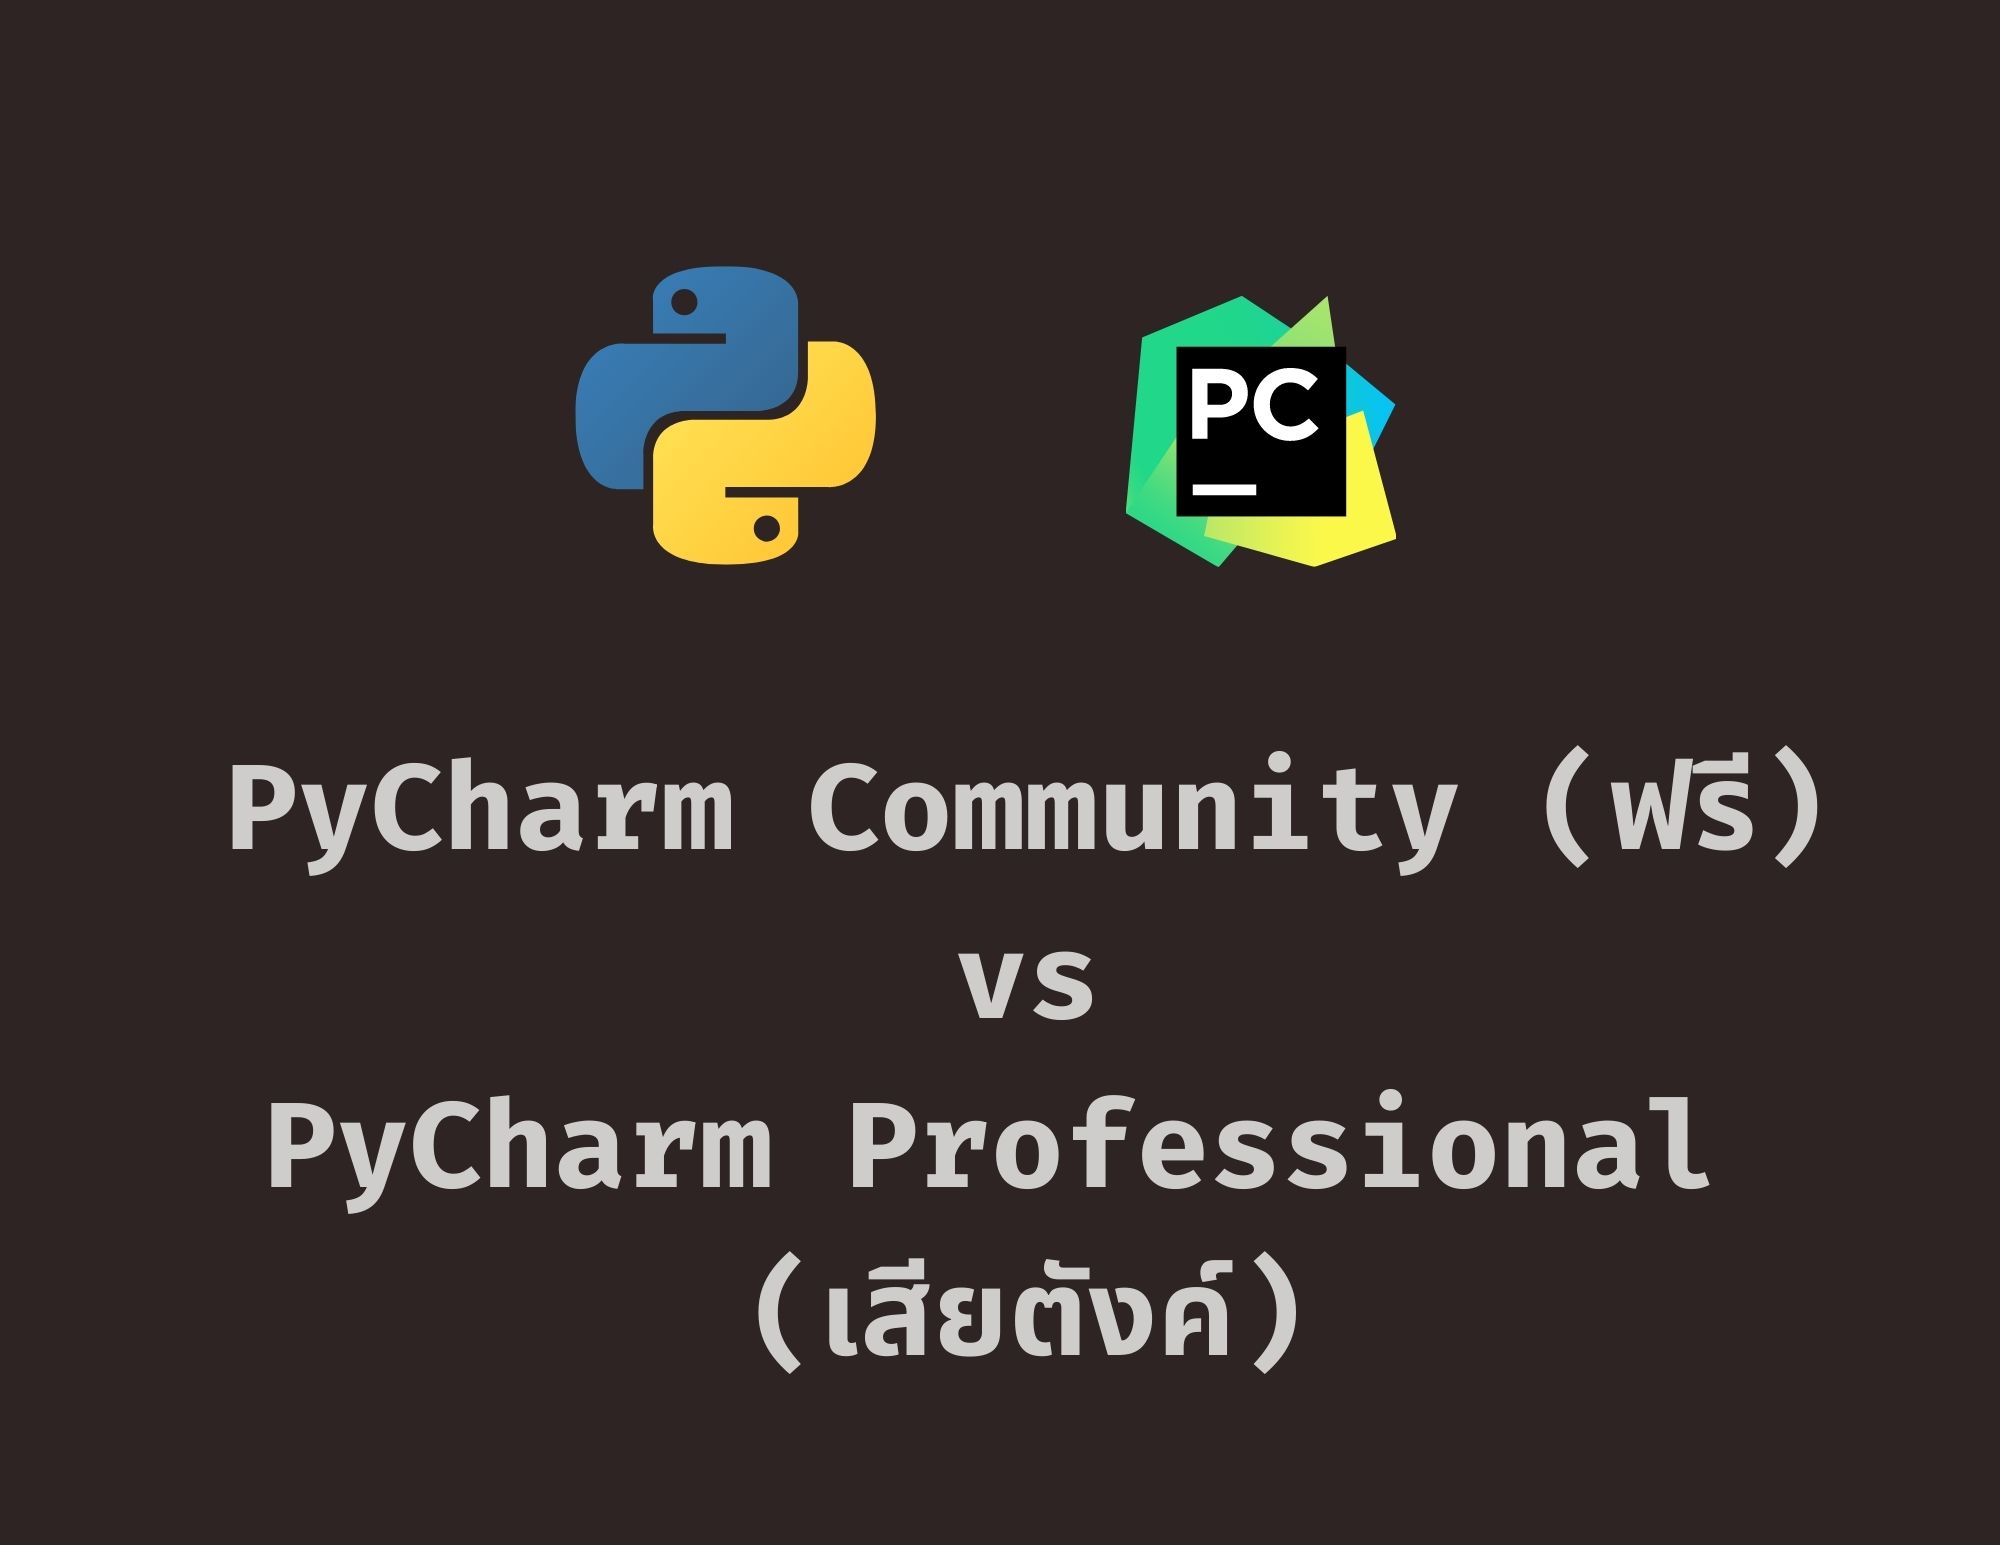 รีวิว PyCharm Community (Free) และ Professional  (Paid Version) ต่างกันอย่างไร ?